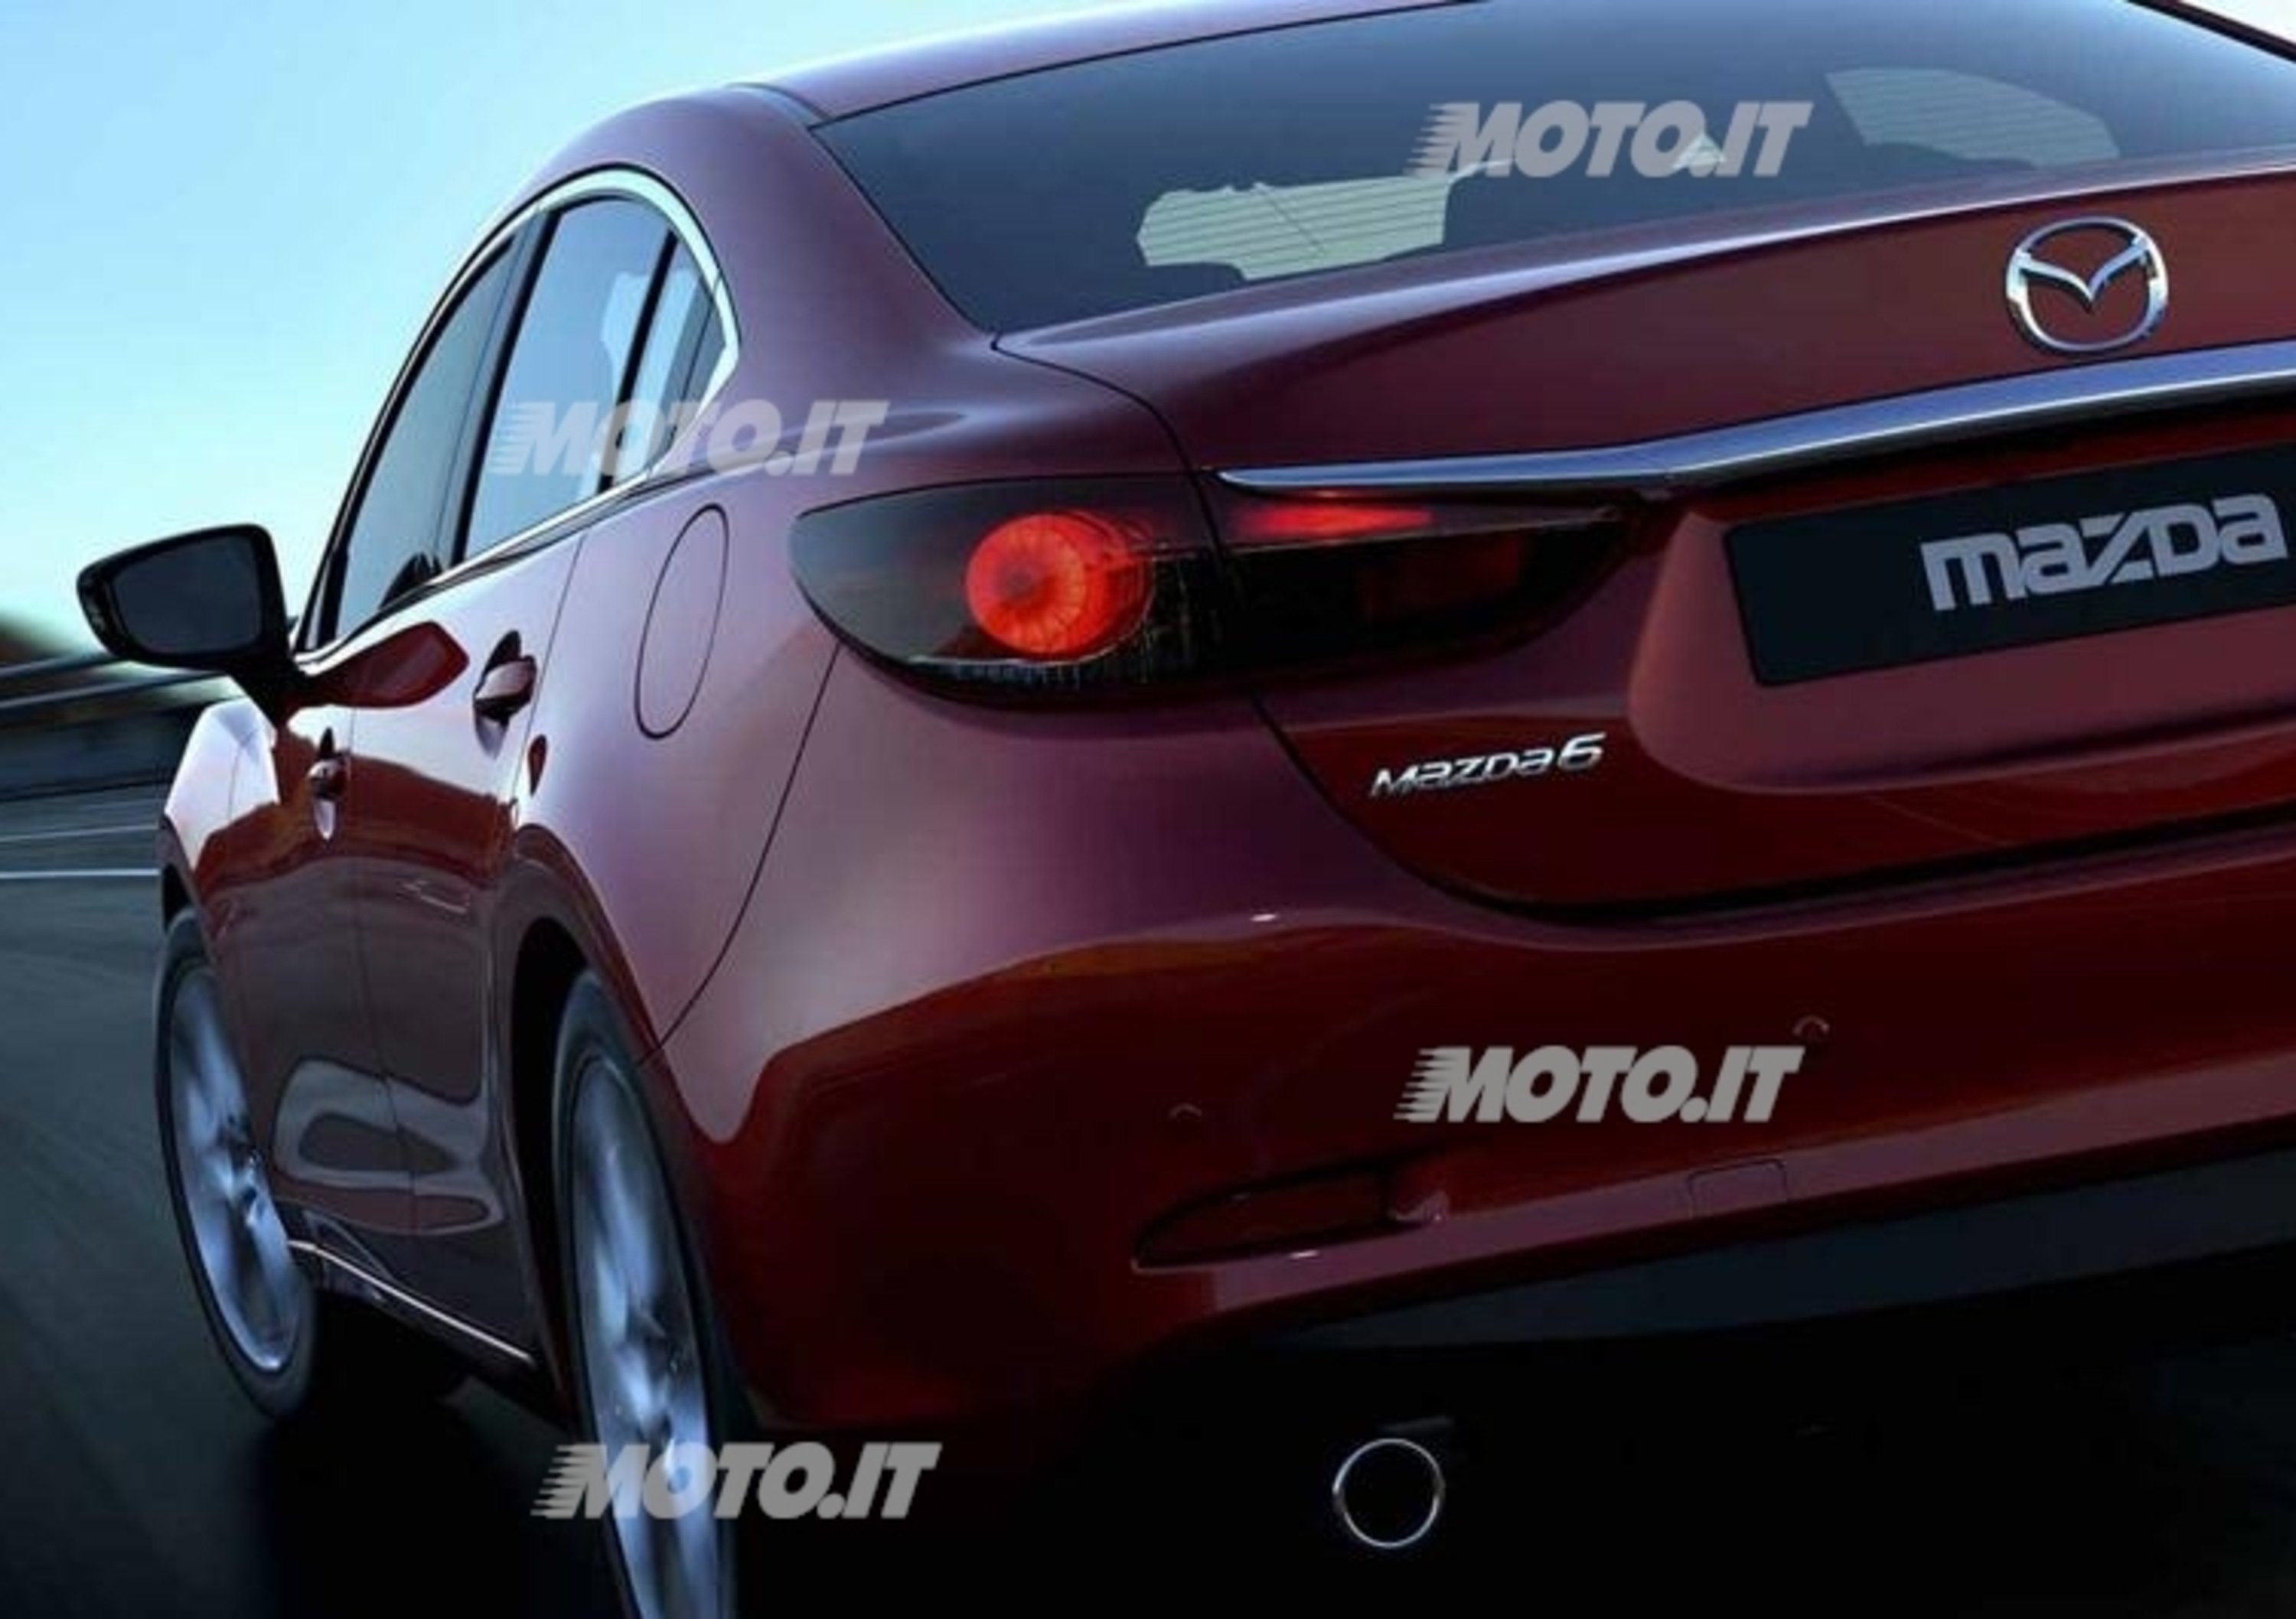 Nuova Mazda6: prime immagini e informazioni ufficiali